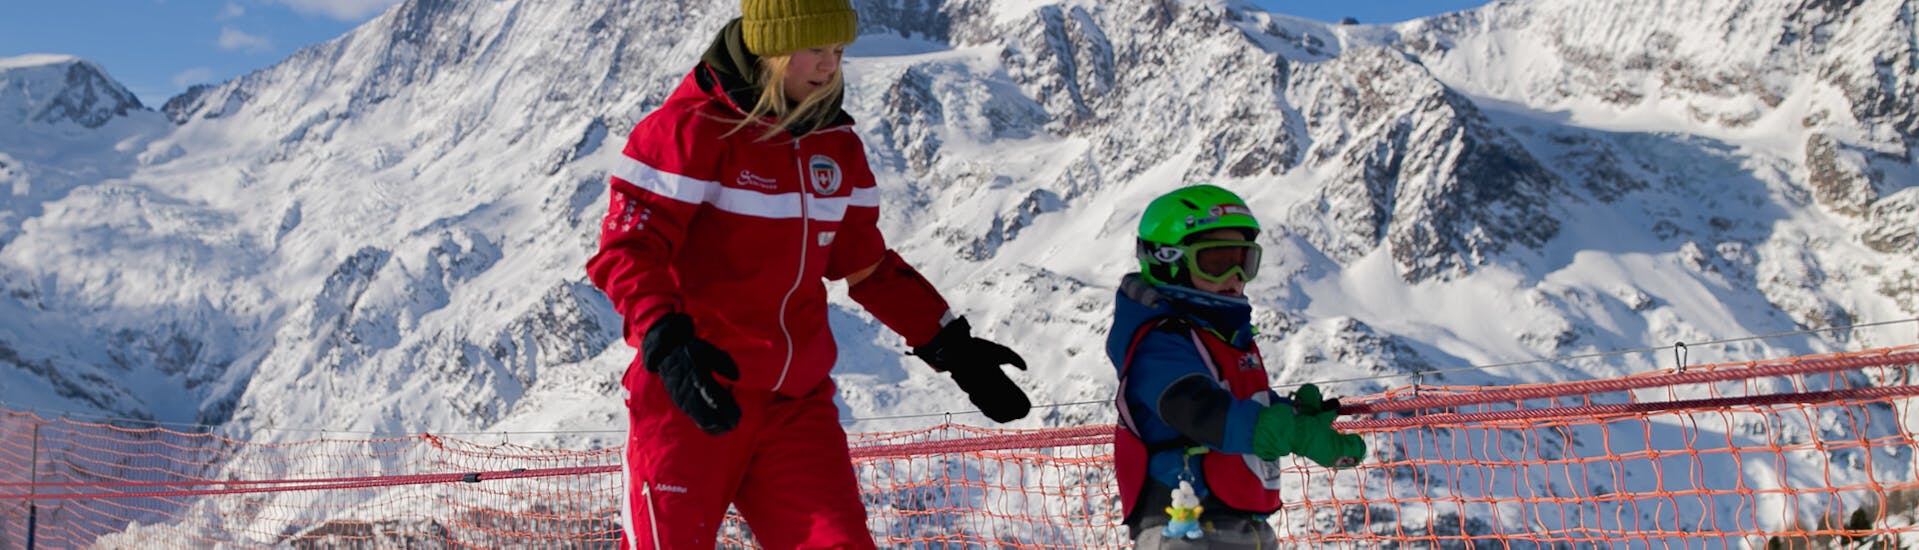 Un moniteur aide un enfant pendant les leçons de ski privées pour enfants de tous niveaux de l'école de ski suisse de Saas-Grund.